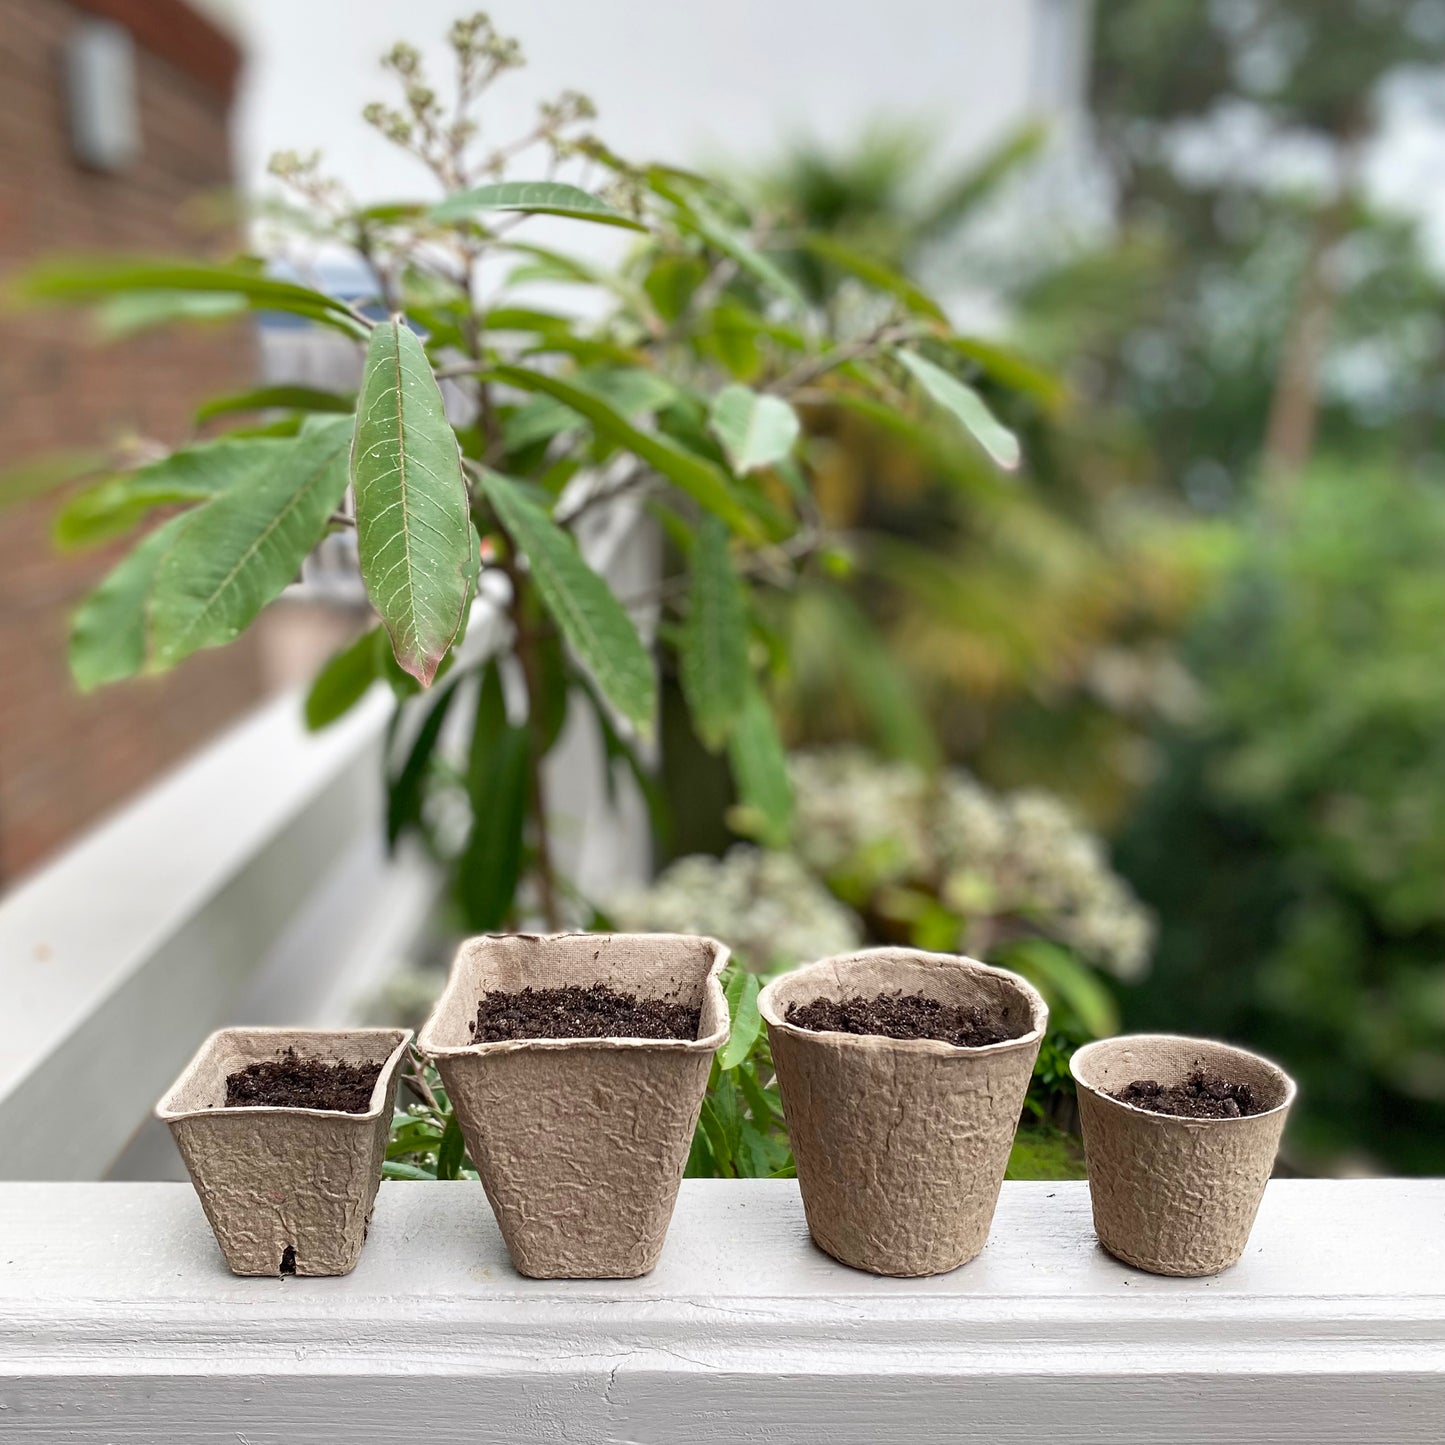 144 x 8cm Eco Square Fibre Biodegradable and Compostable Plant Pots